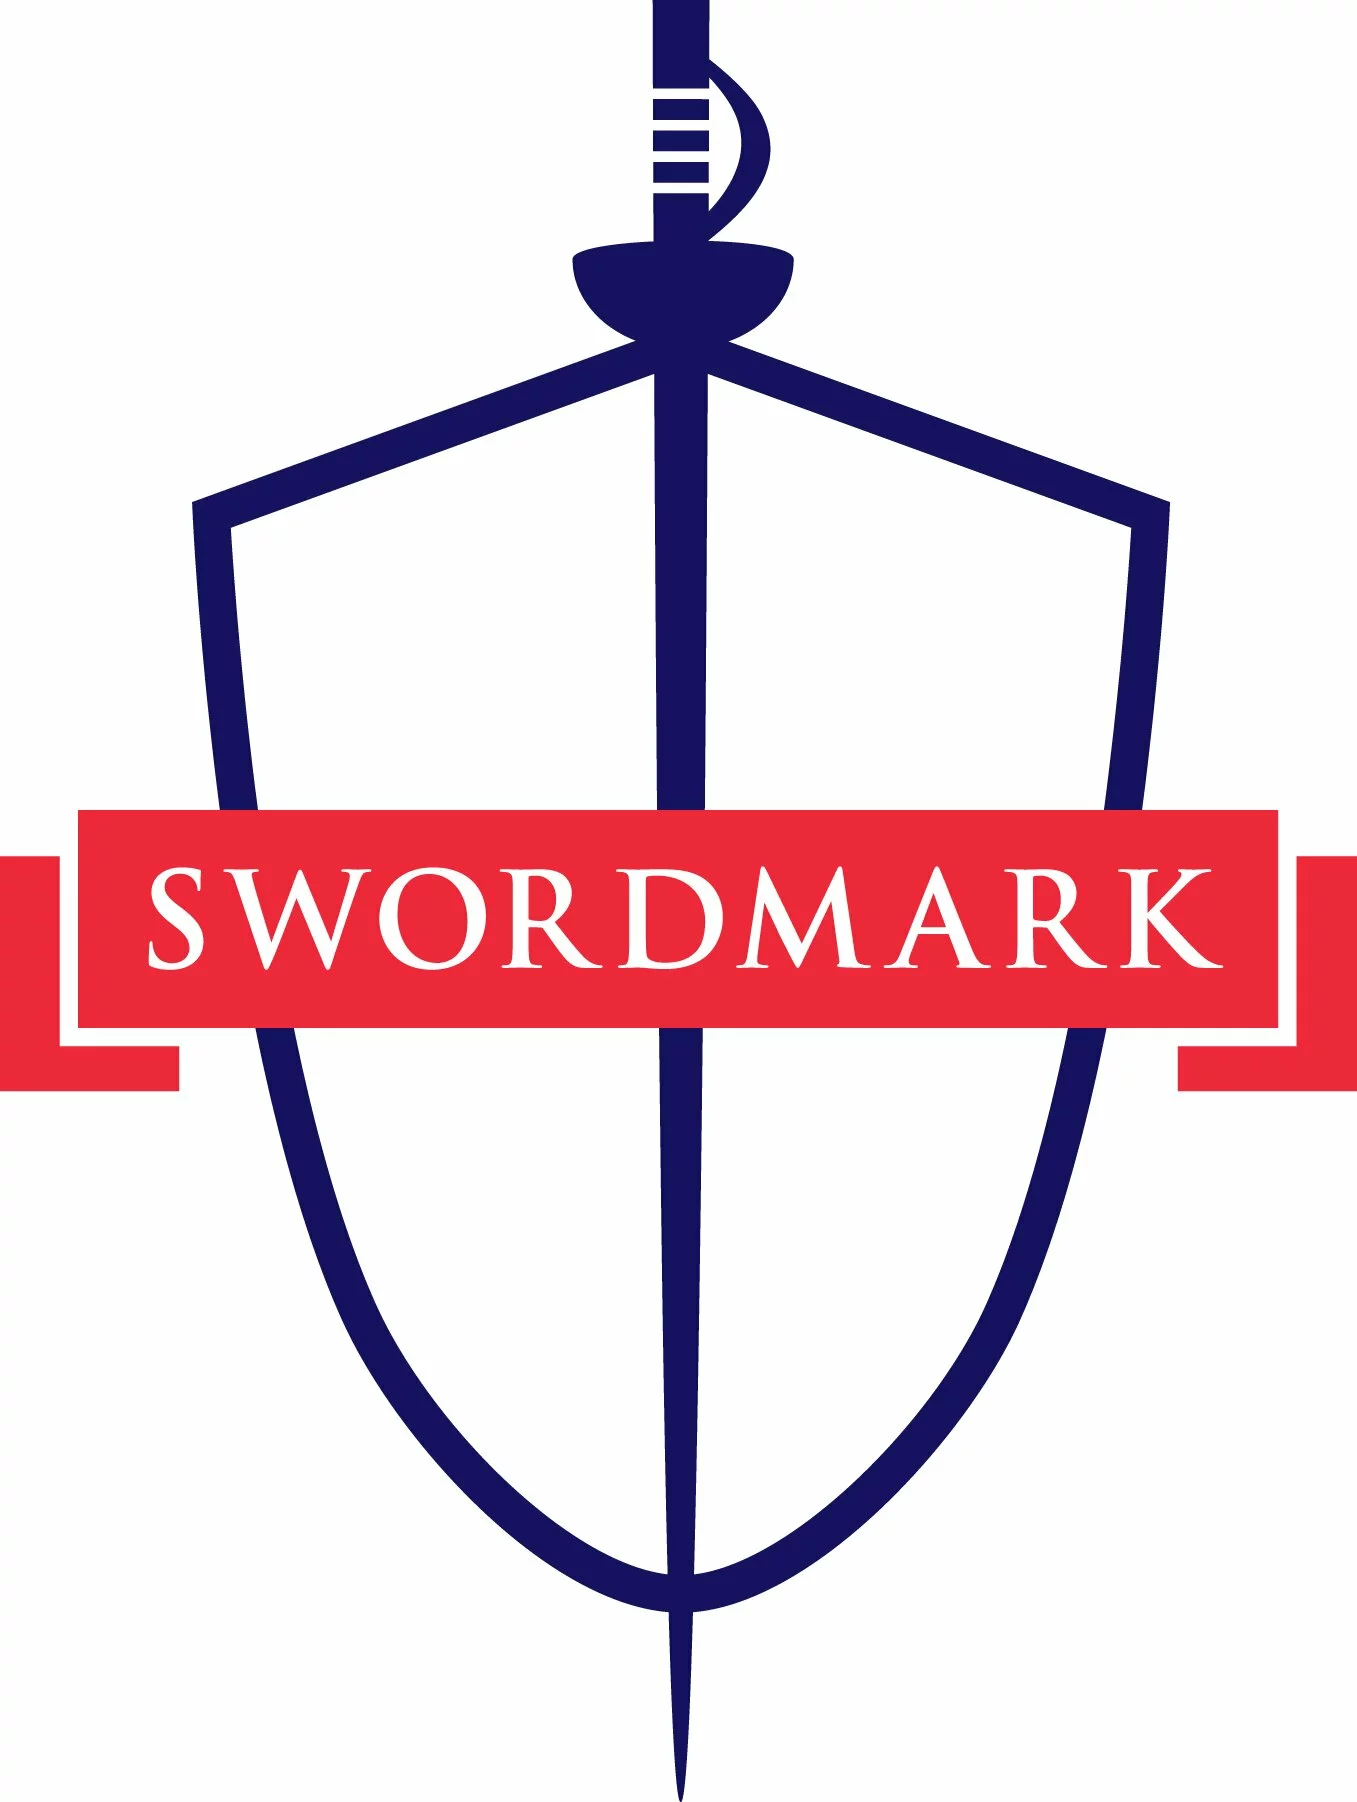 Swordmark logo